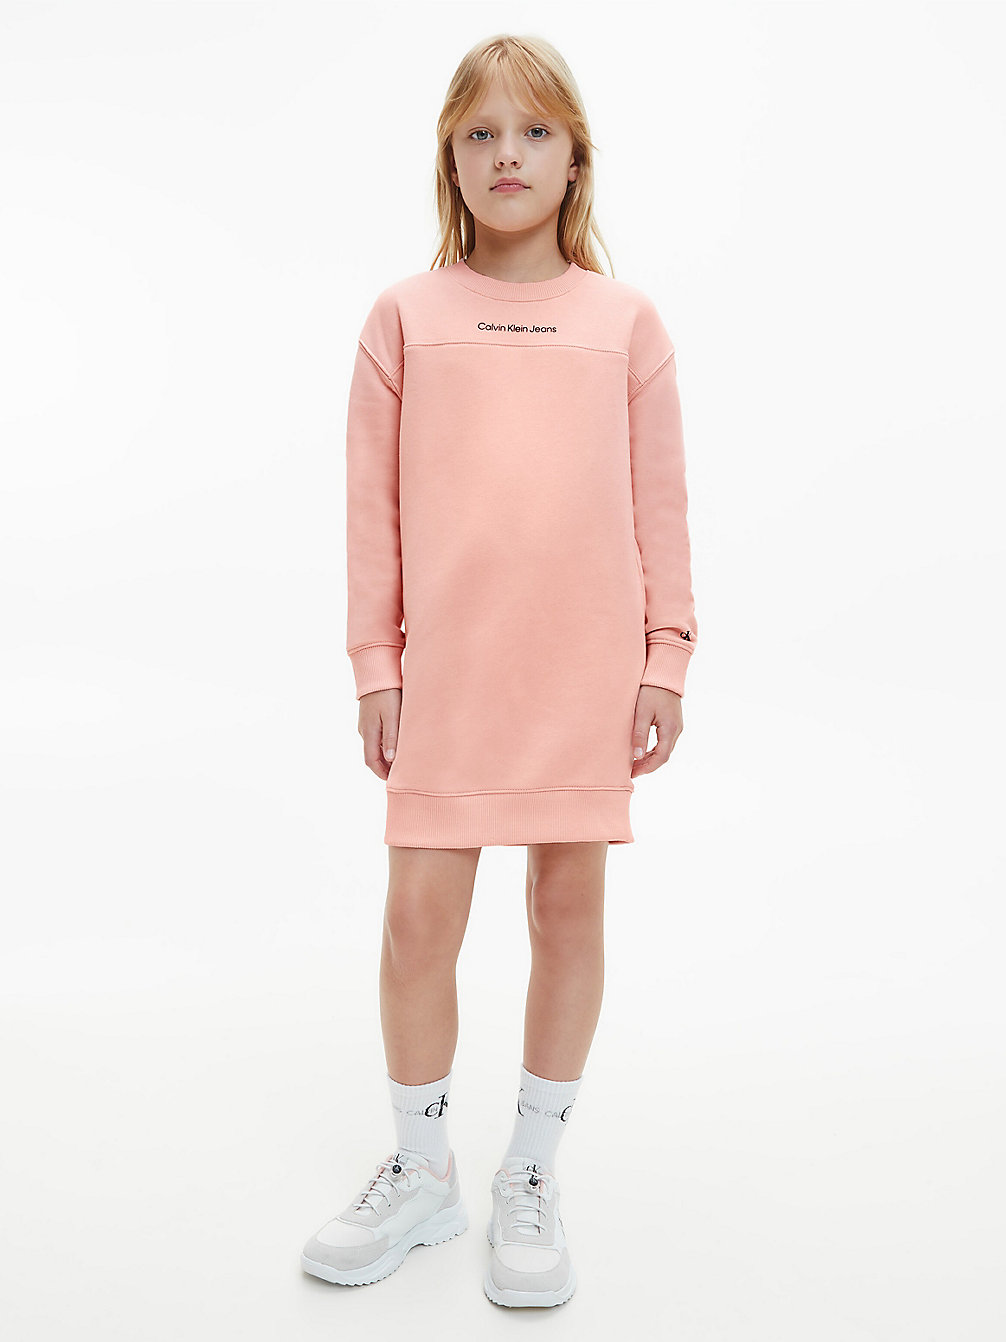 PINK BLUSH > Sweatshirtkleid > undefined girls - Calvin Klein